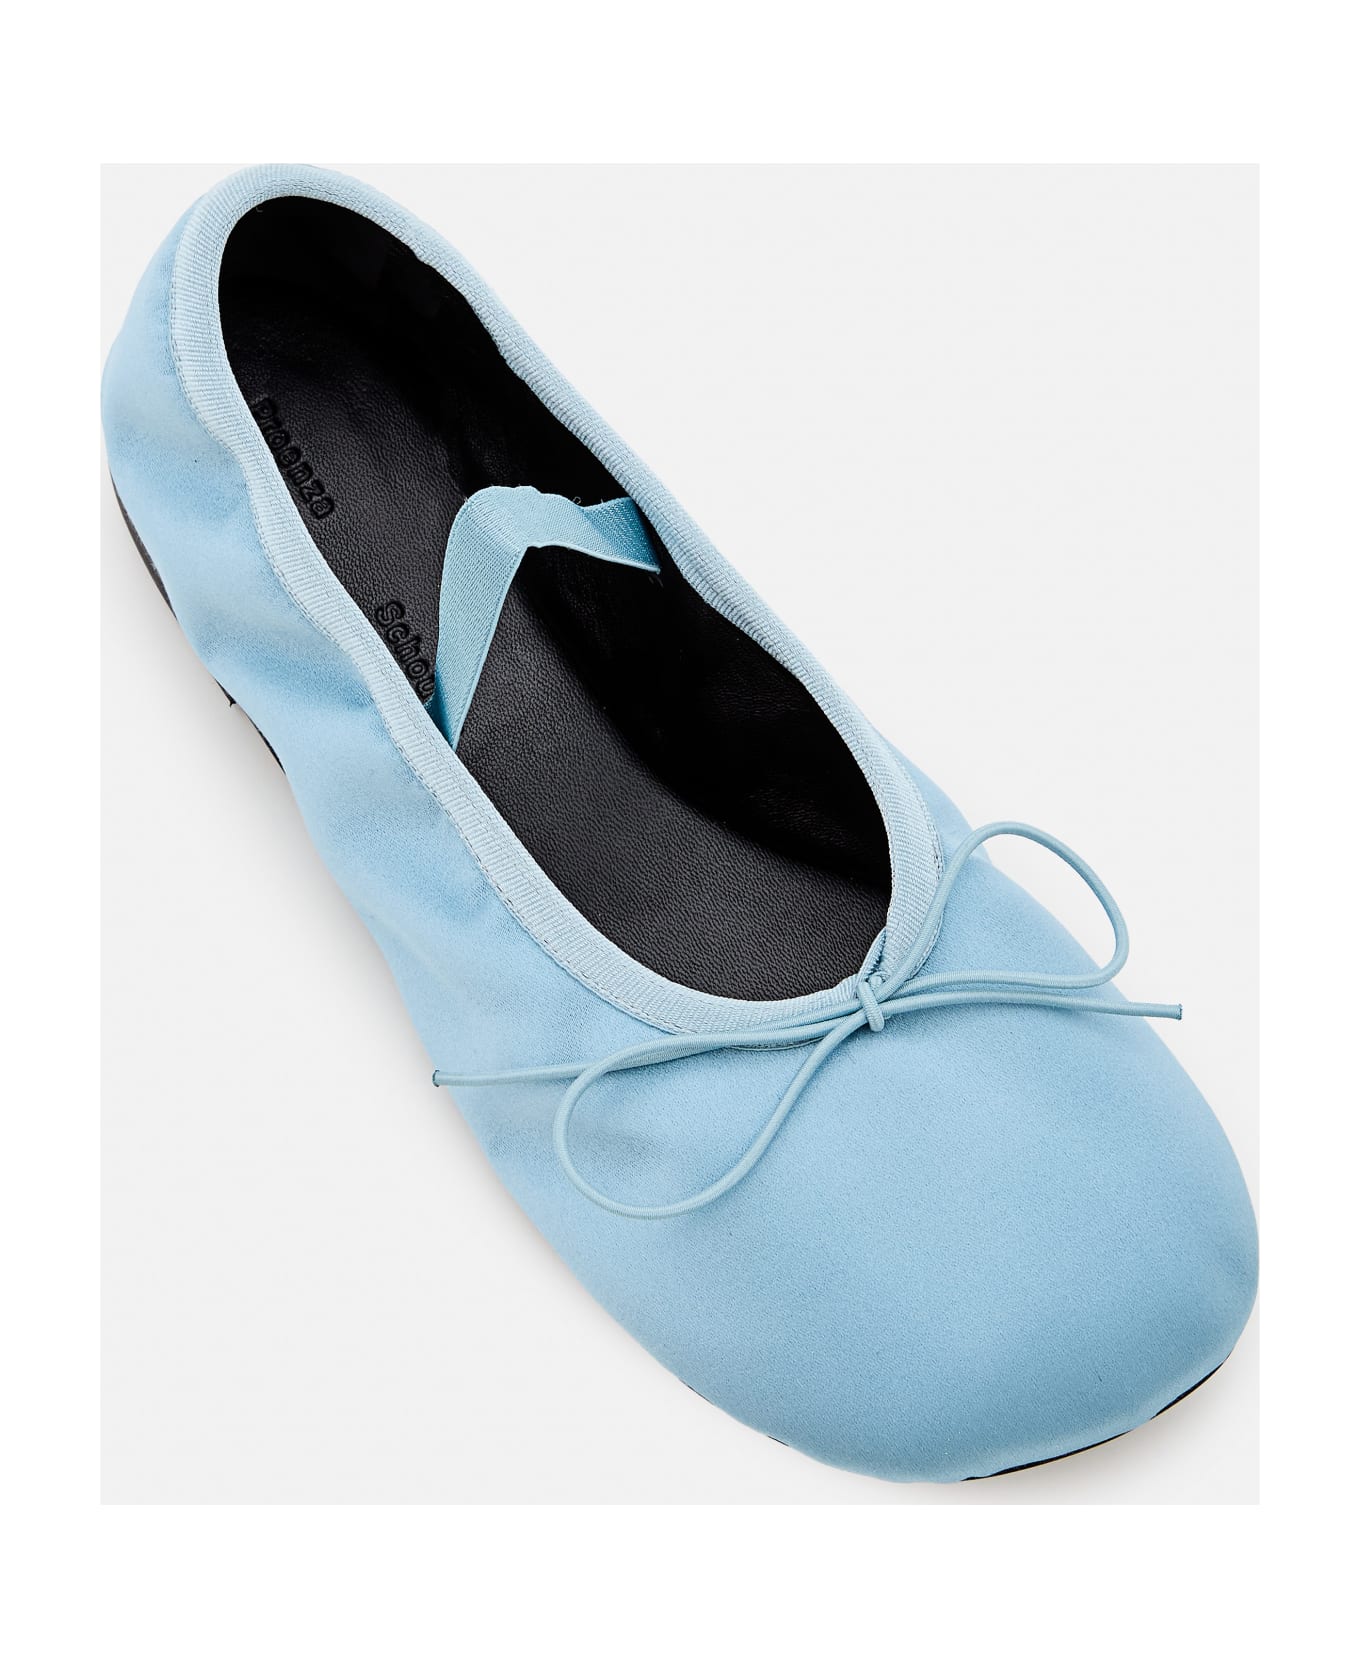 Proenza Schouler Glove Ballet Flats - Blue